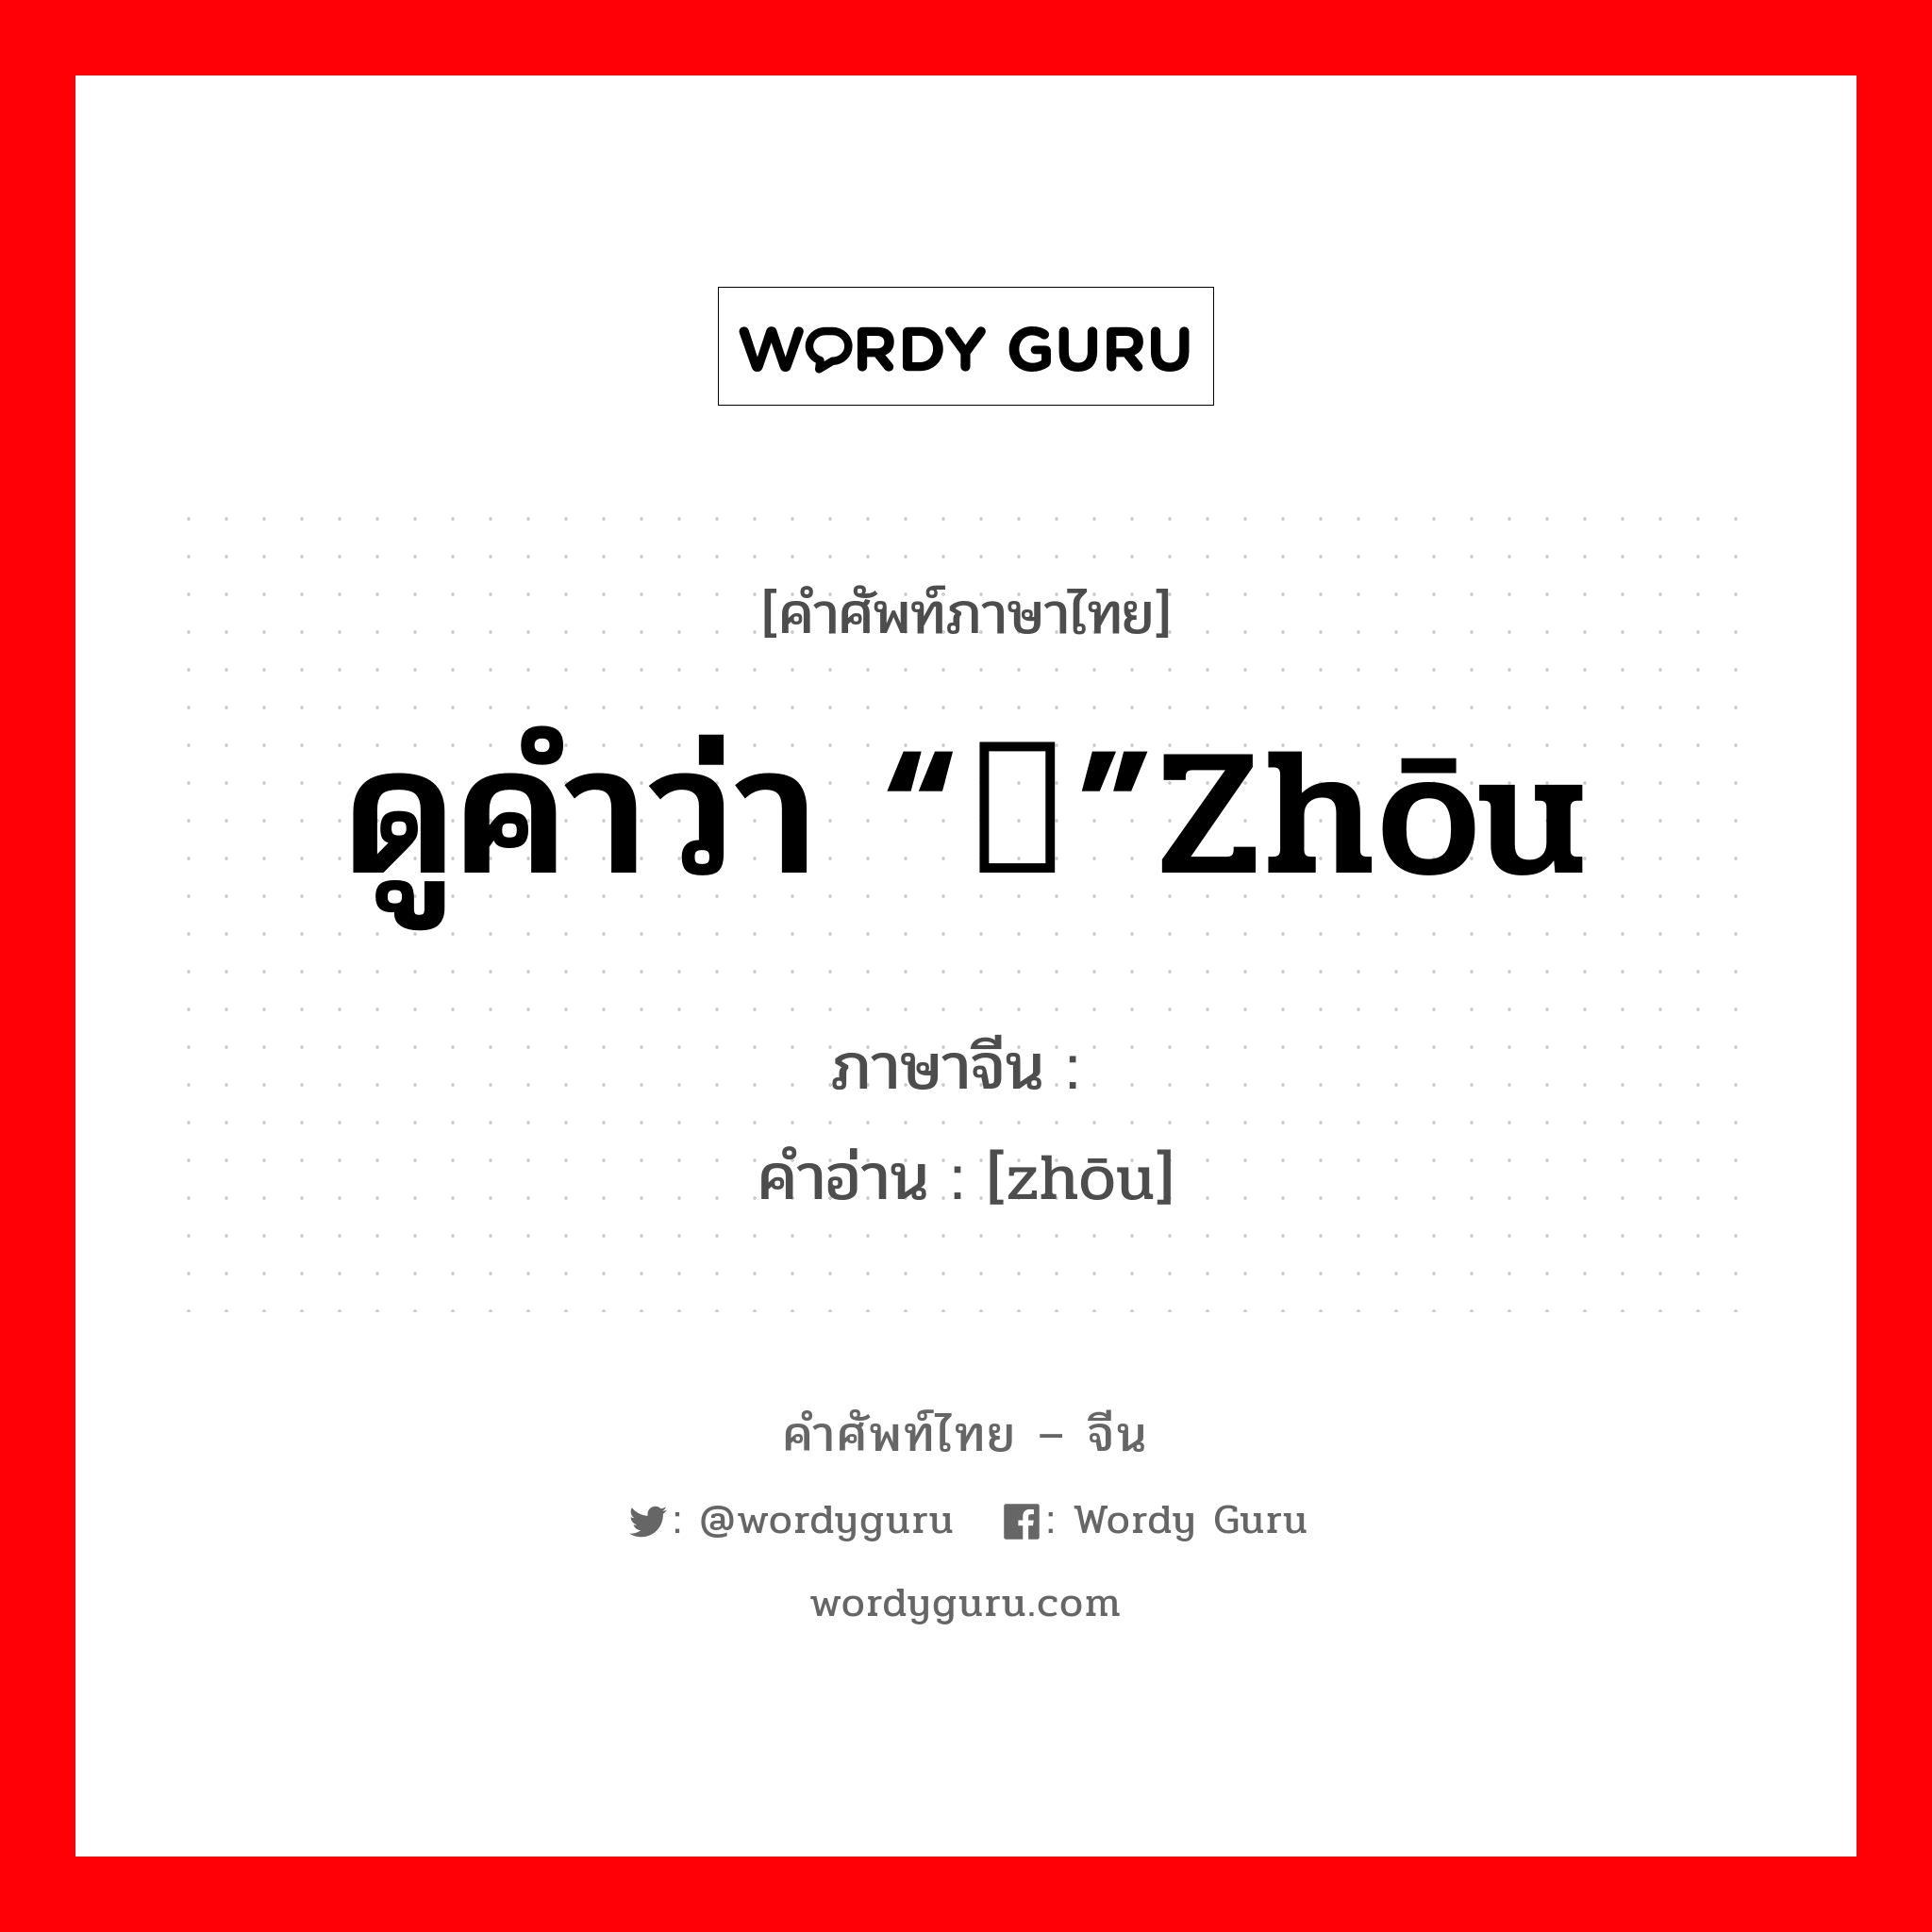 诪 ภาษาไทย?, คำศัพท์ภาษาไทย - จีน 诪 ภาษาจีน ดูคำว่า “侜”zhōu คำอ่าน [zhōu]